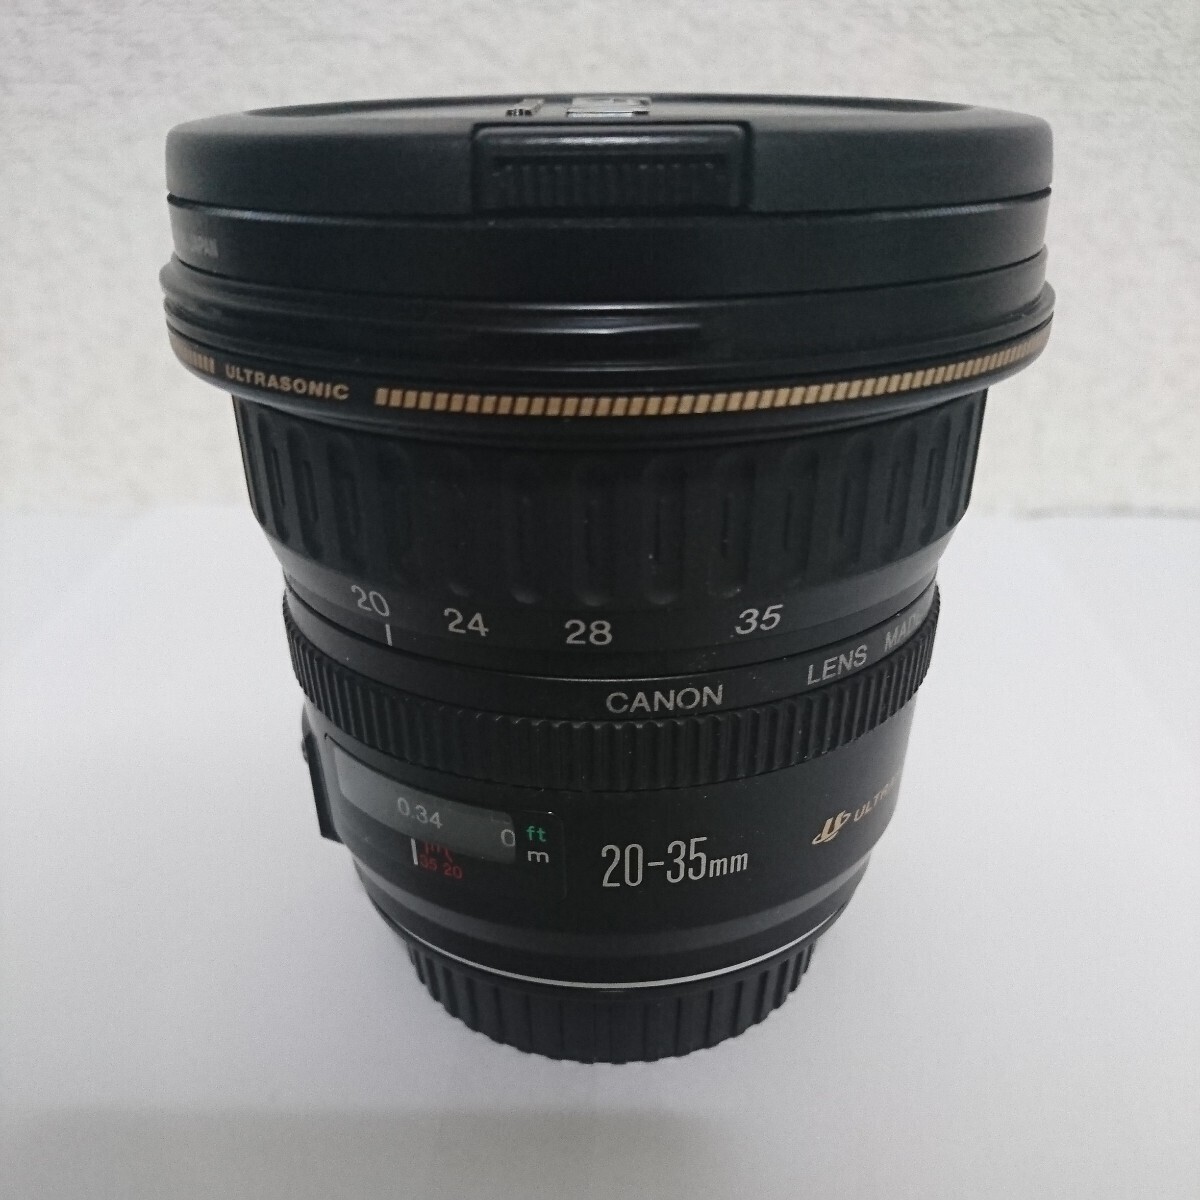 極美品 Canon EF 20-35mm F3.5-4.5 ZOOM Lens キヤノン レンズ 完動 ULTRASONIC 光学美品 両面キャップ付 の画像1